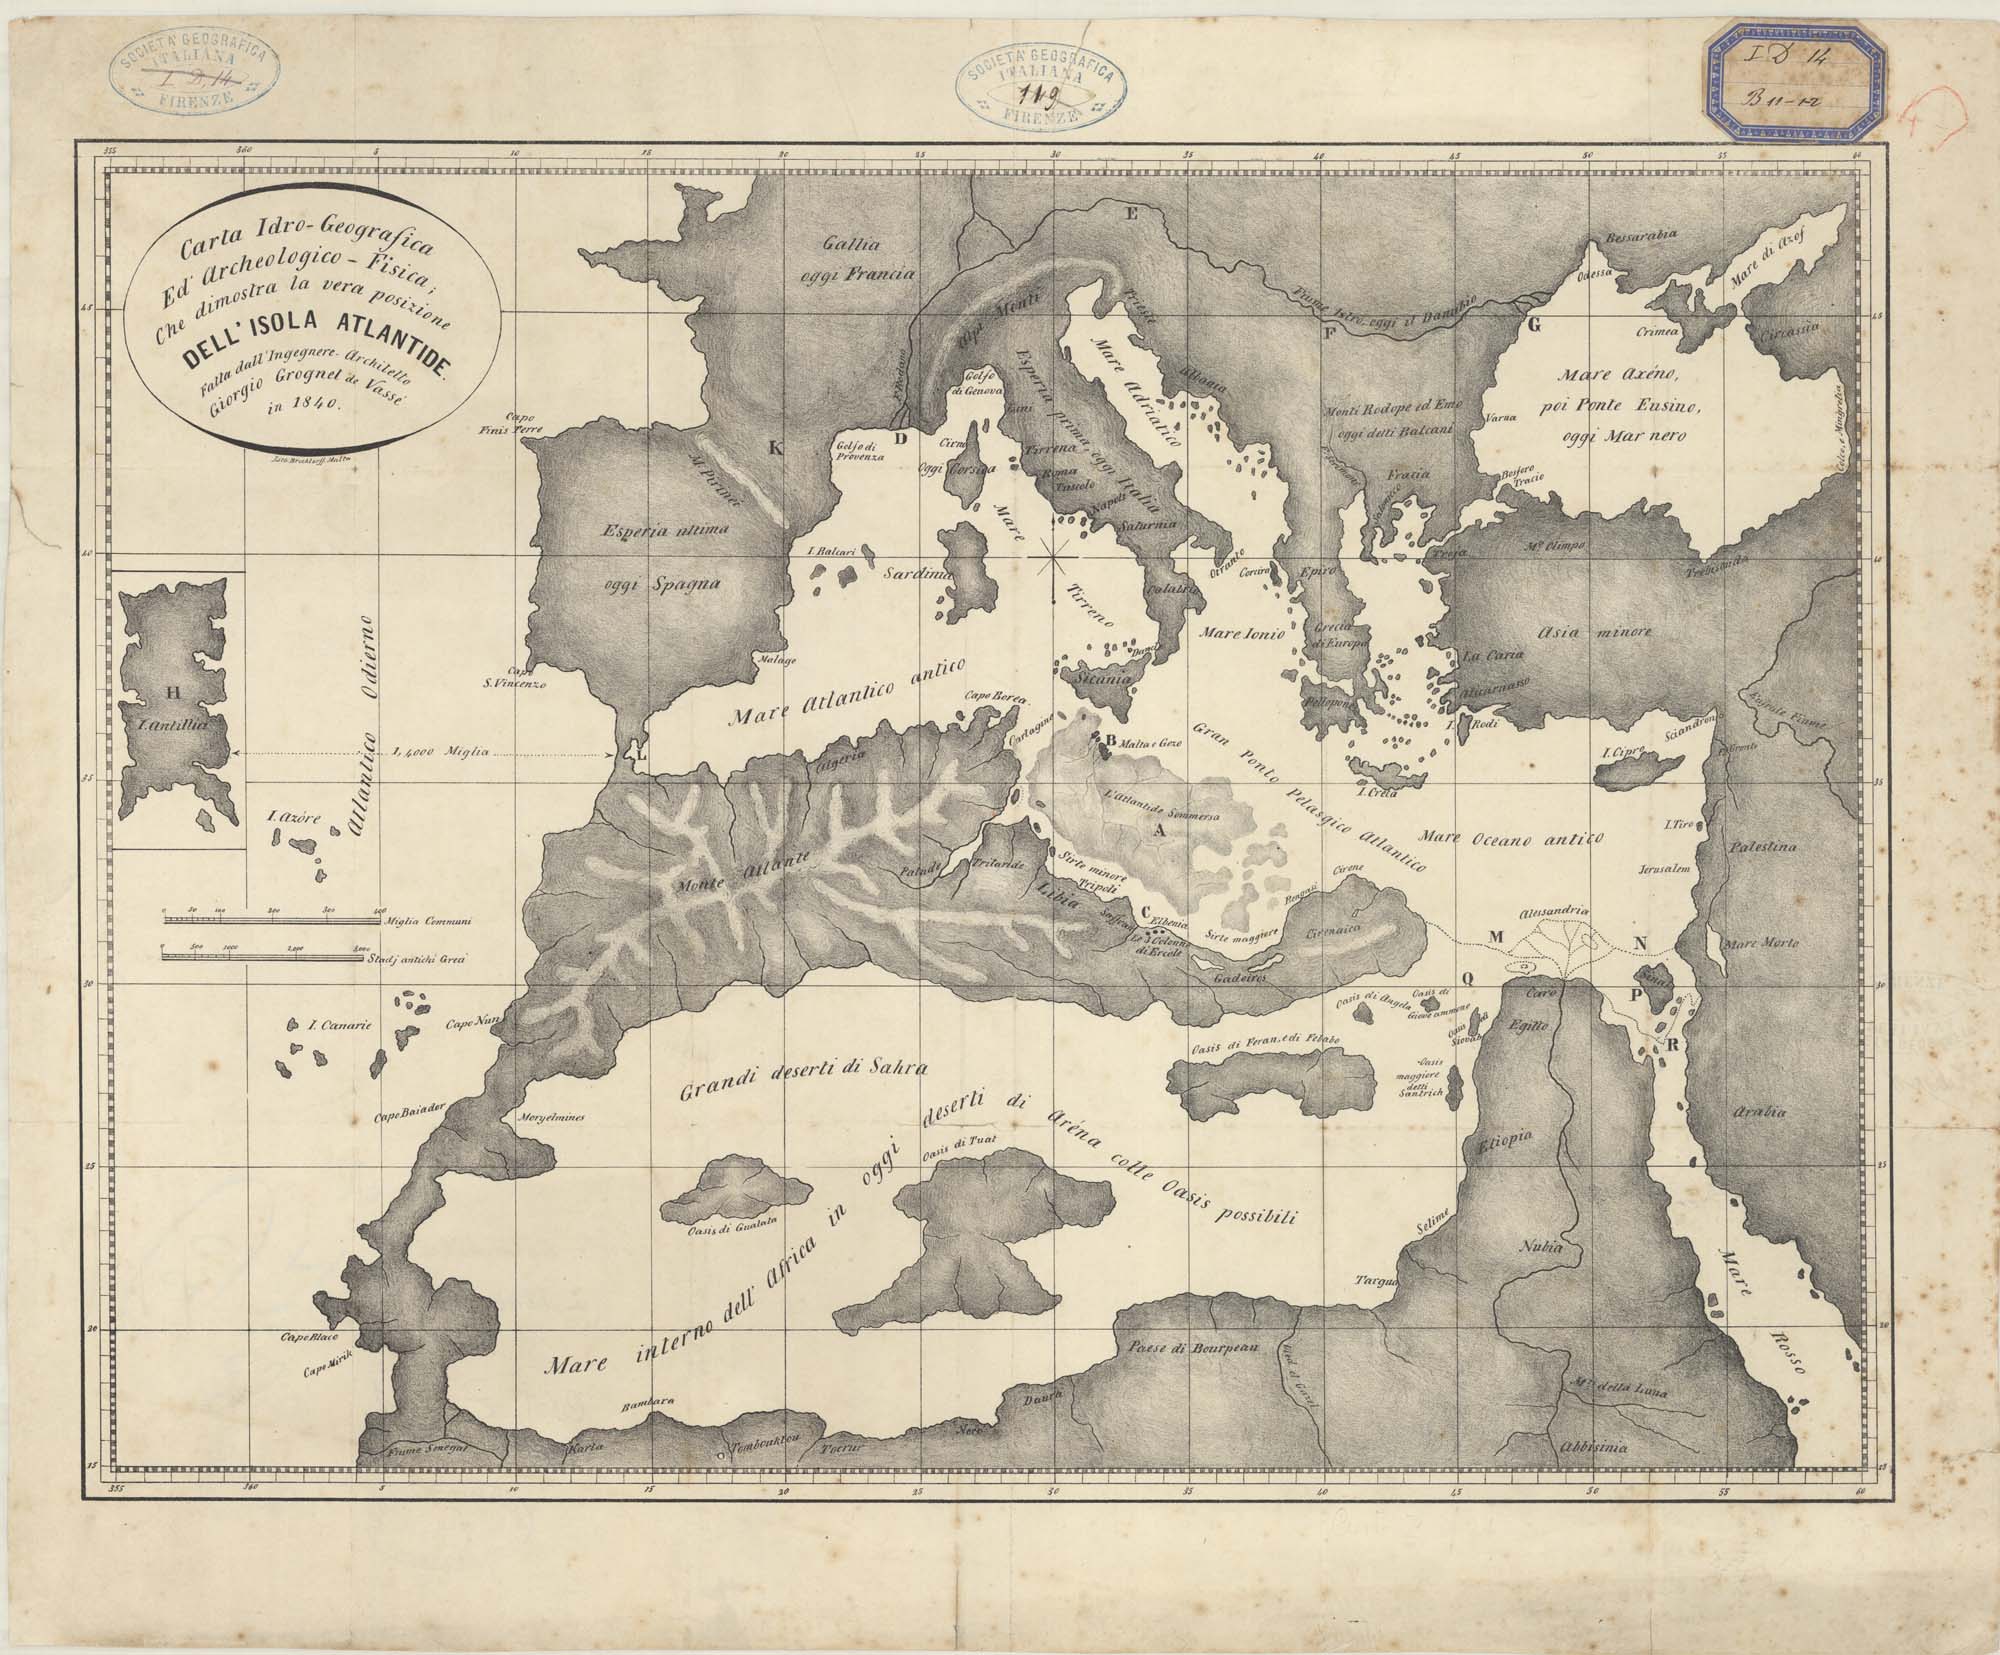 G. Grognet de Vassé, Carta idro-geografica ed archeologico-fisica; che dimostra la vera posizione dell’isola Atlantide, Malta, 1840